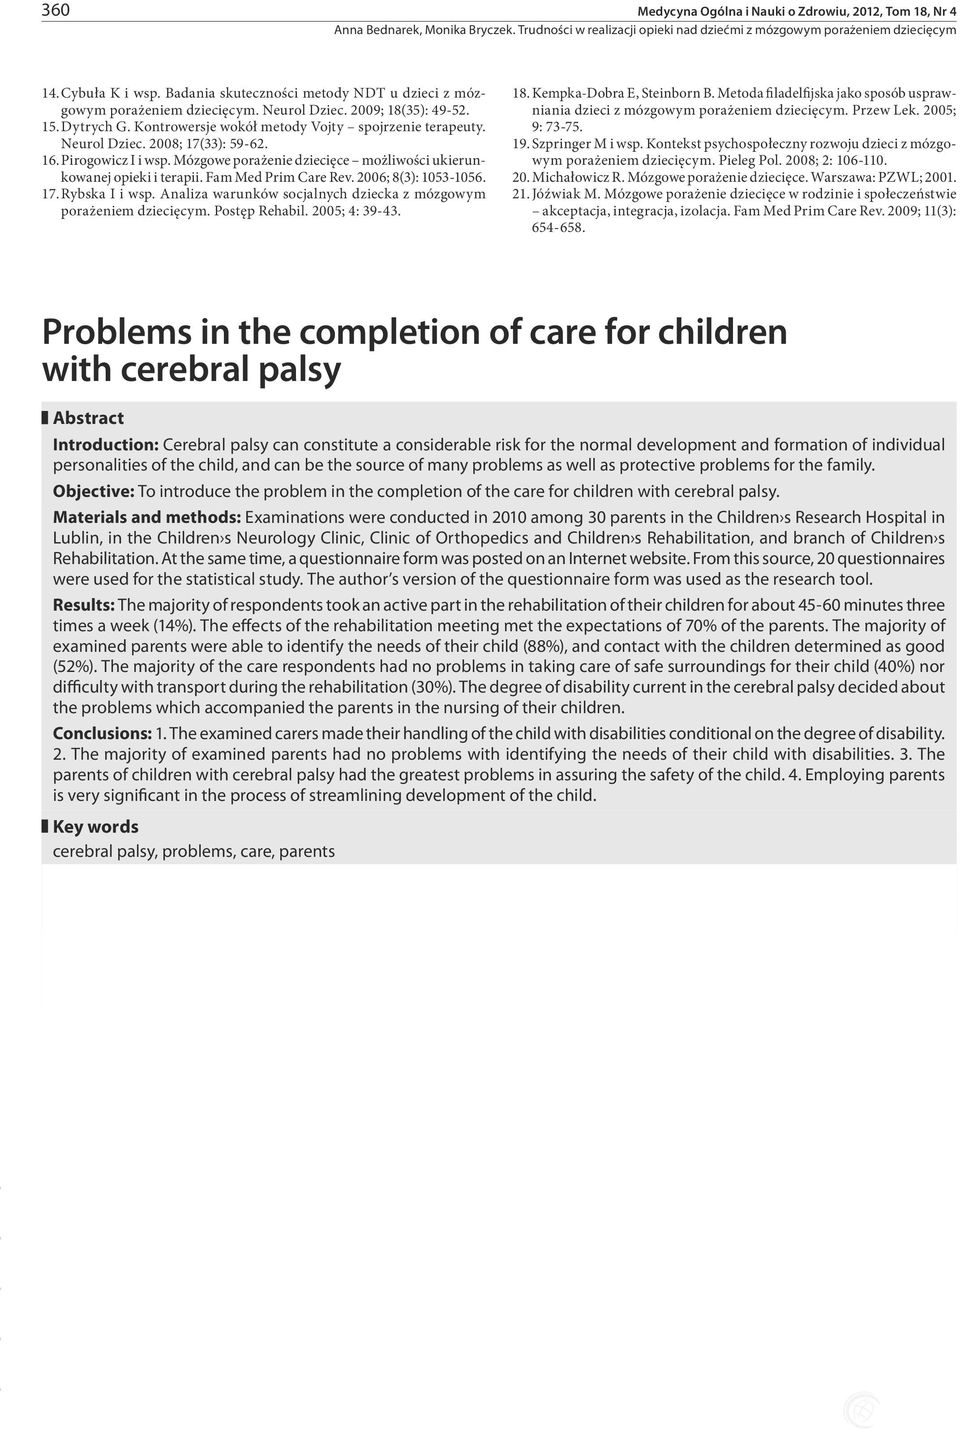 Fam Med Prim Care Rev. 2006; 8(3): 1053-1056. 17. Rybska I i wsp. Analiza warunków socjalnych dziecka z mózgowym porażeniem dziecięcym. Postęp Rehabil. 2005; 4: 39-43. 18. Kempka-Dobra E, Steinborn B.